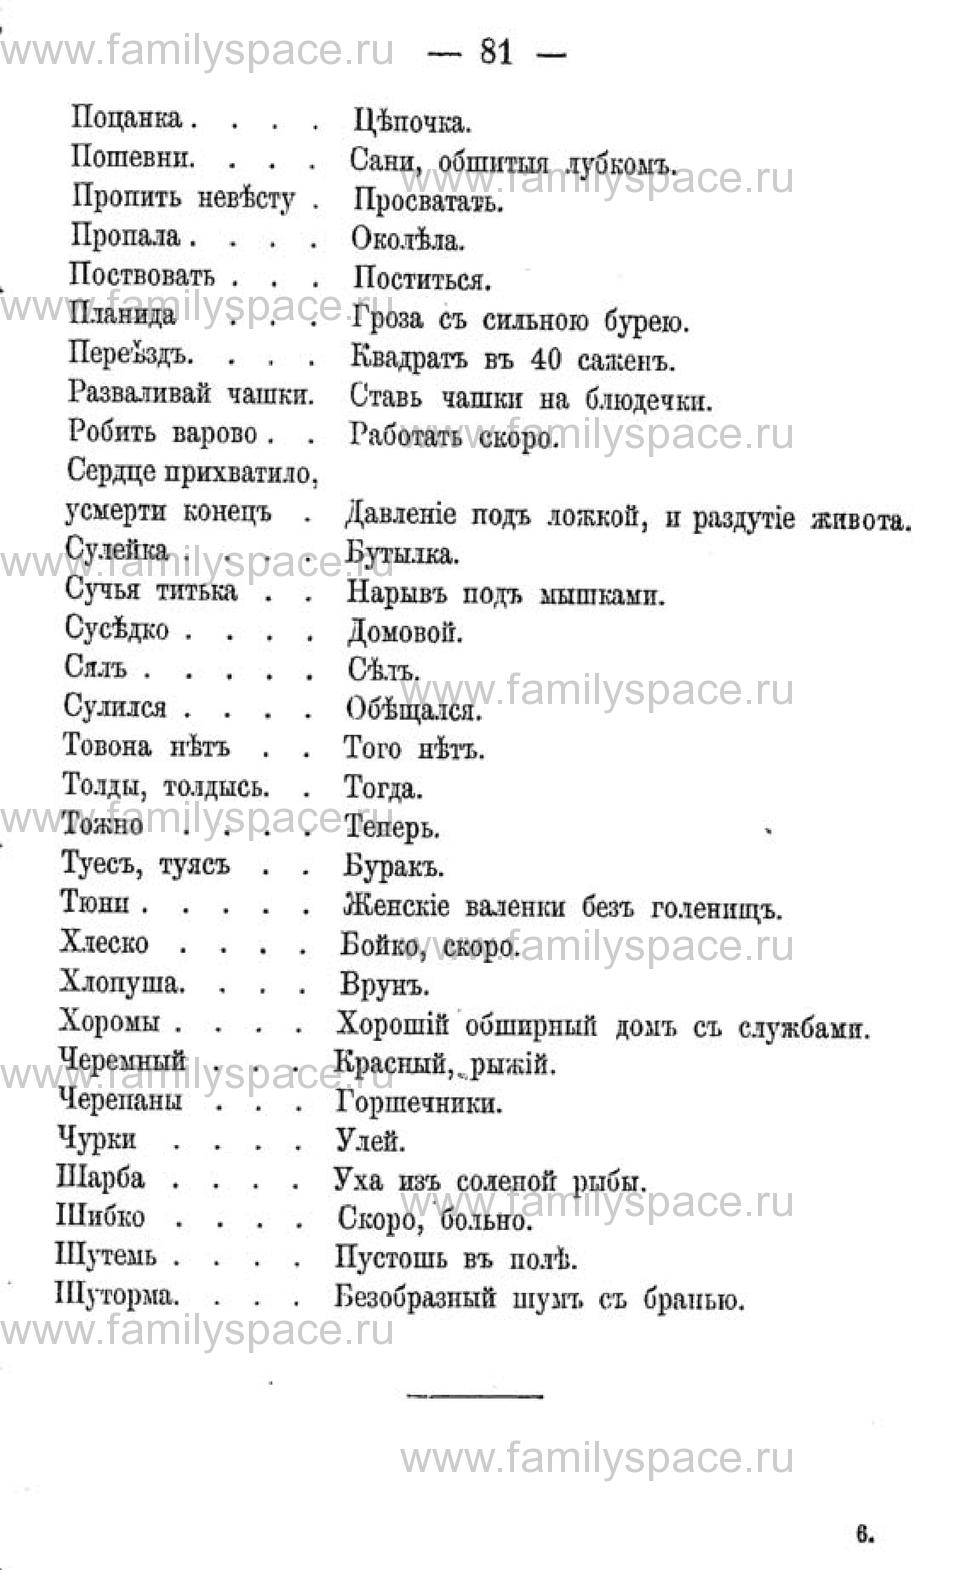 Поиск по фамилии - Календарь Вятской губернии - 1880, страница 2081